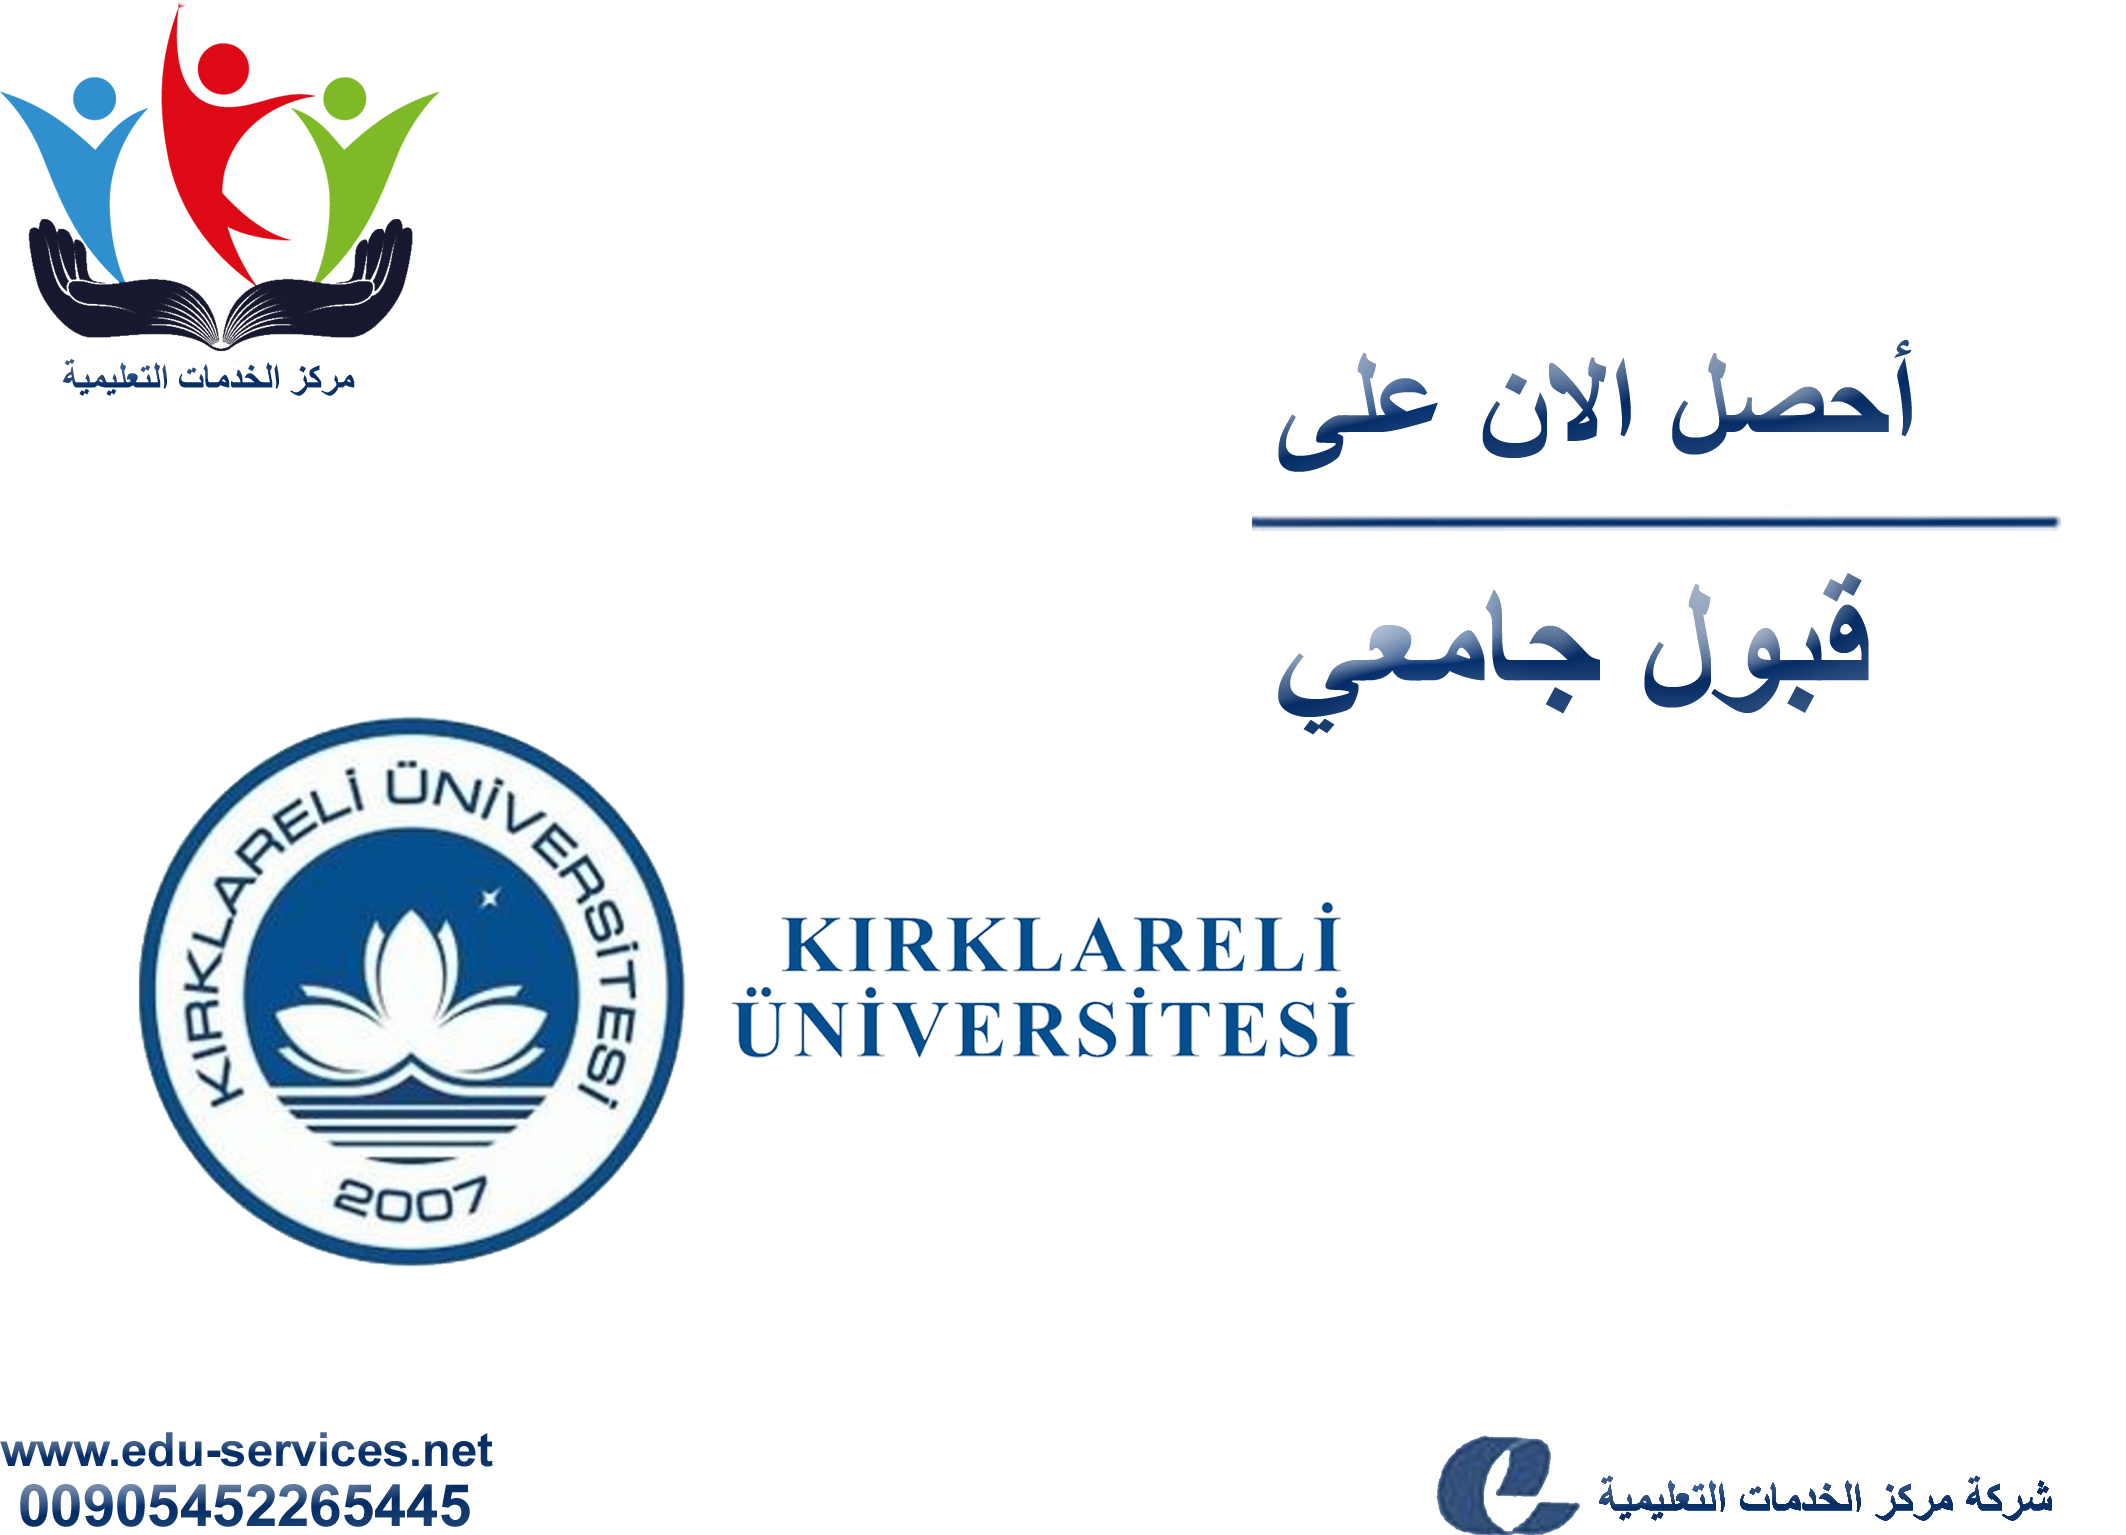 افتتاح التسجيل في جامعة كريك لارلي للعام 2019-2020